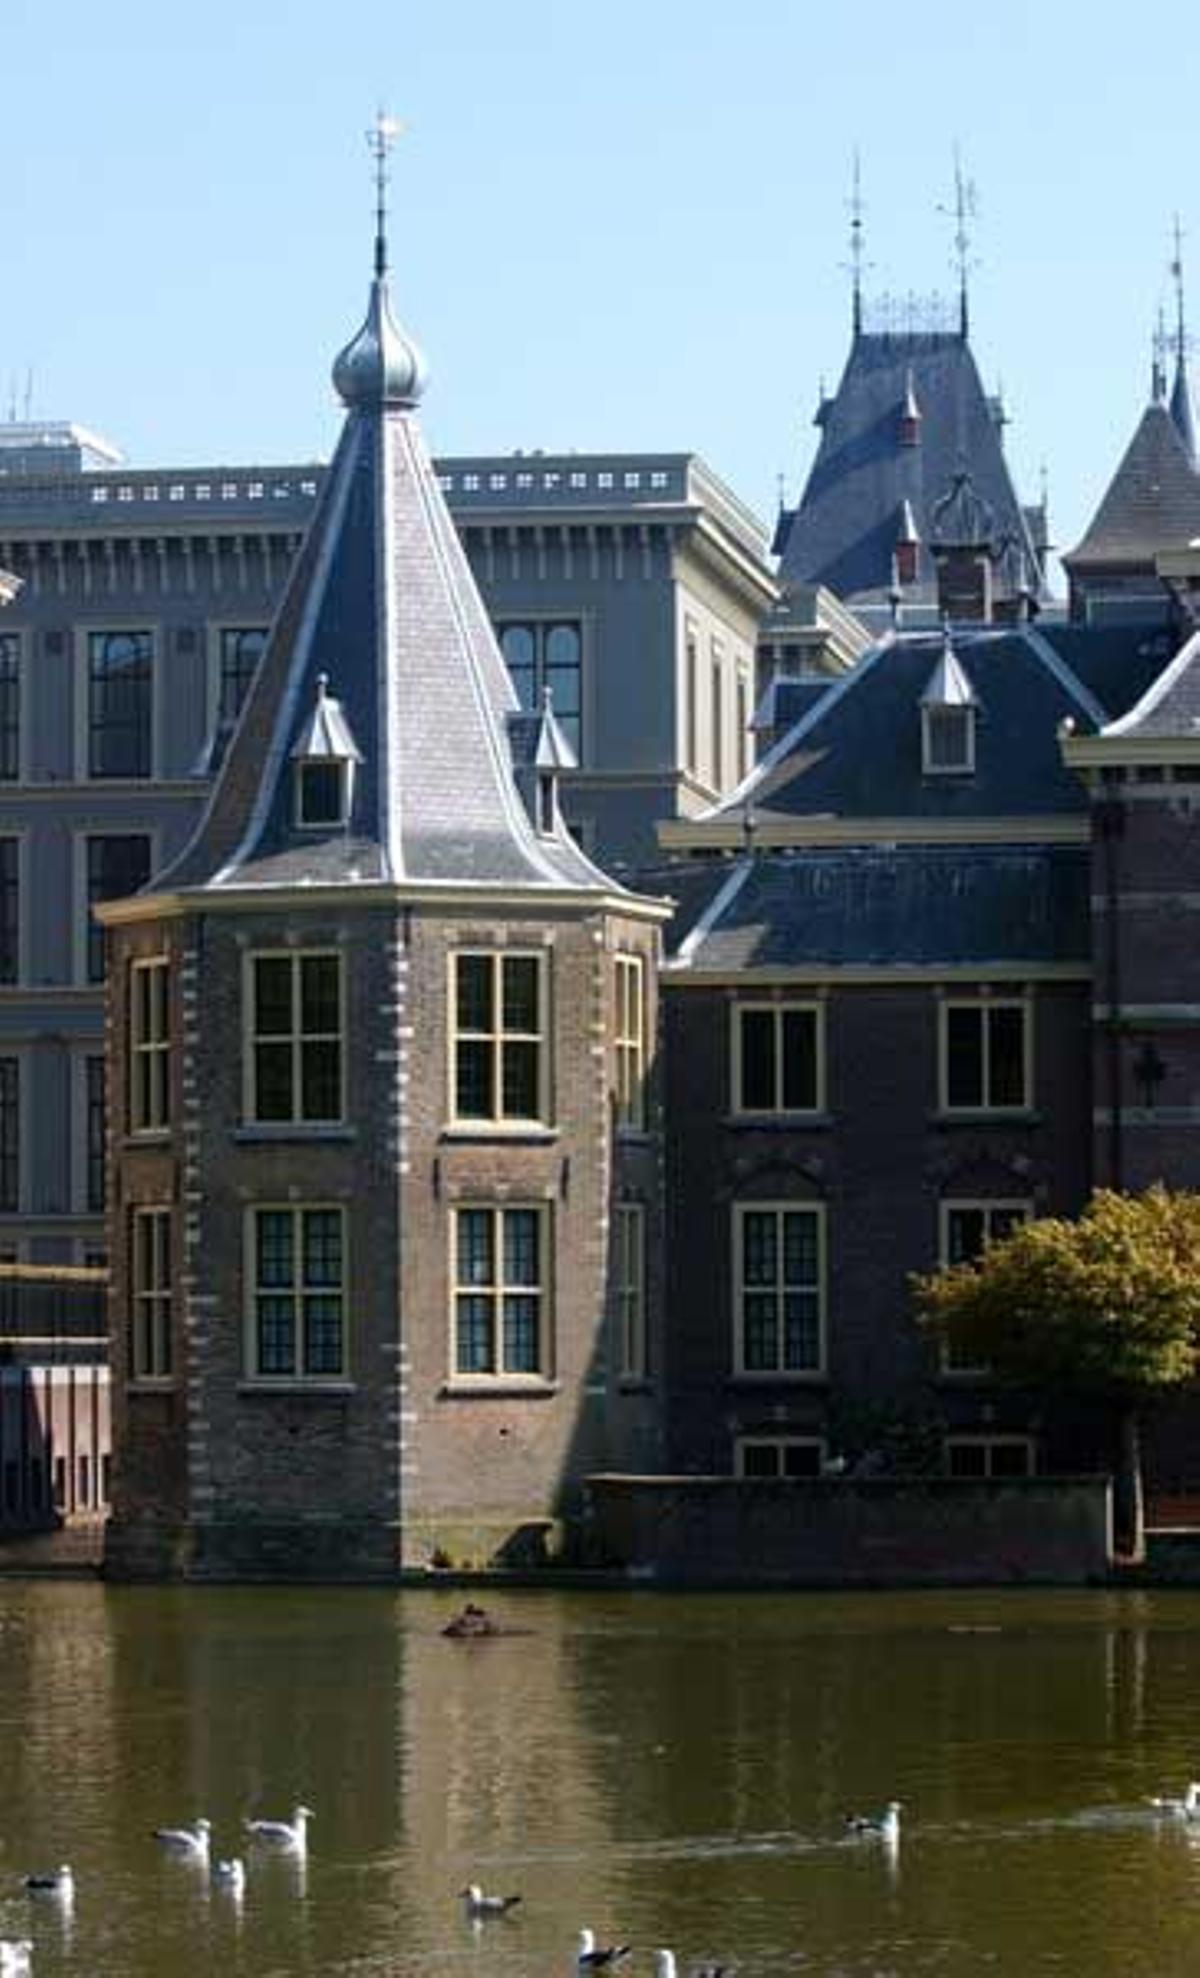 El Parlamento de Holanda conocido como Binnenhof